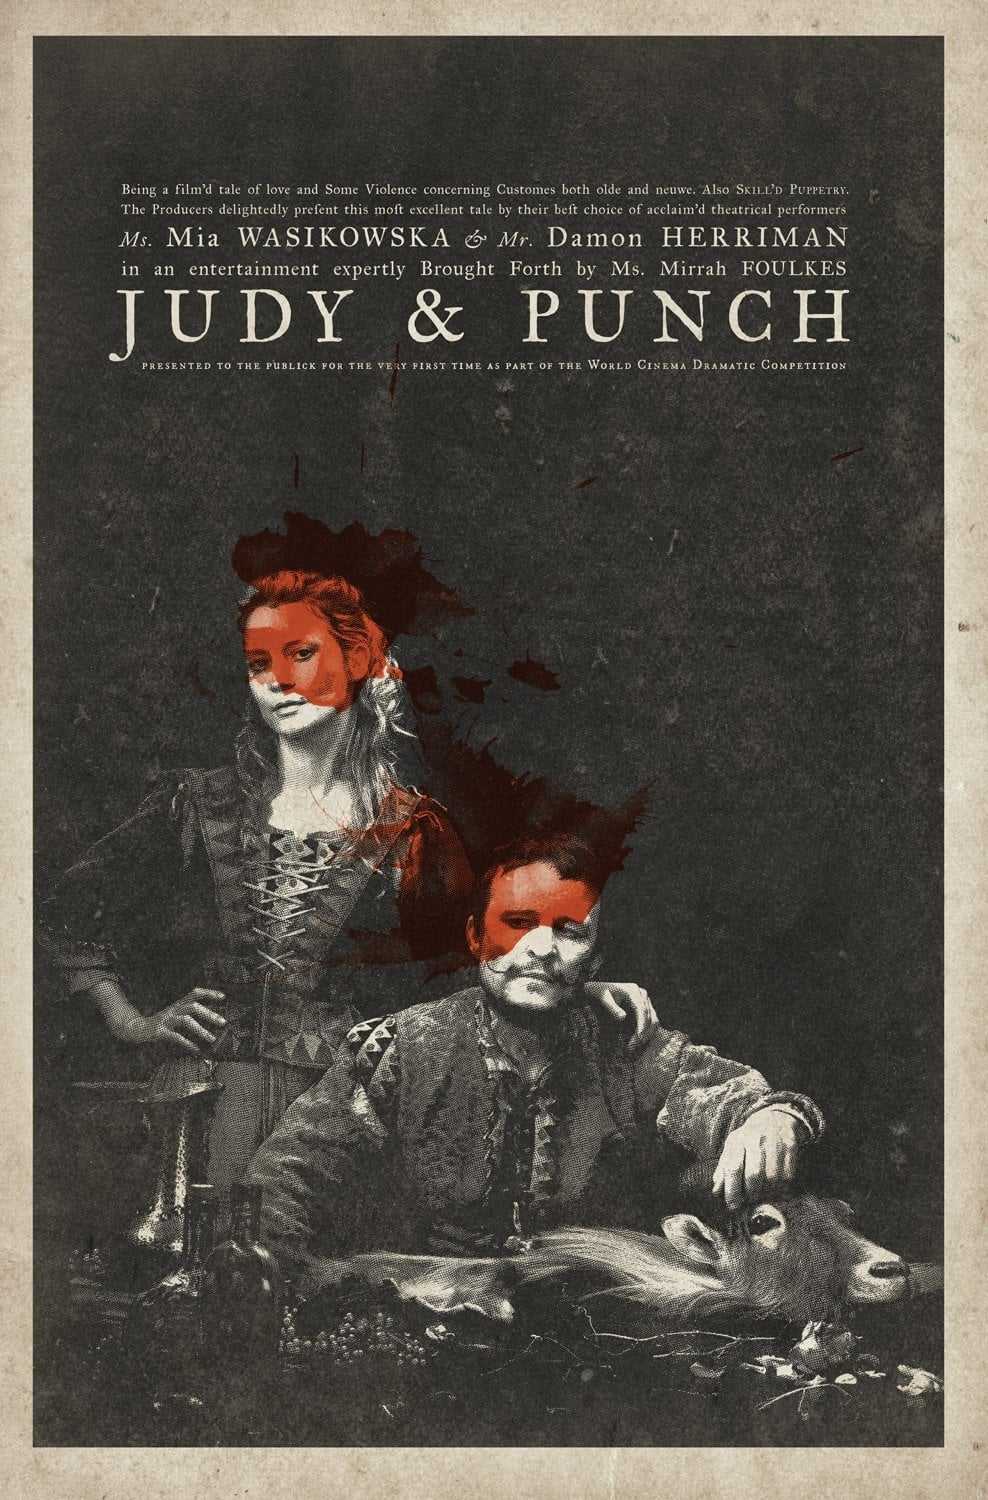 джуди и панч постер 2019